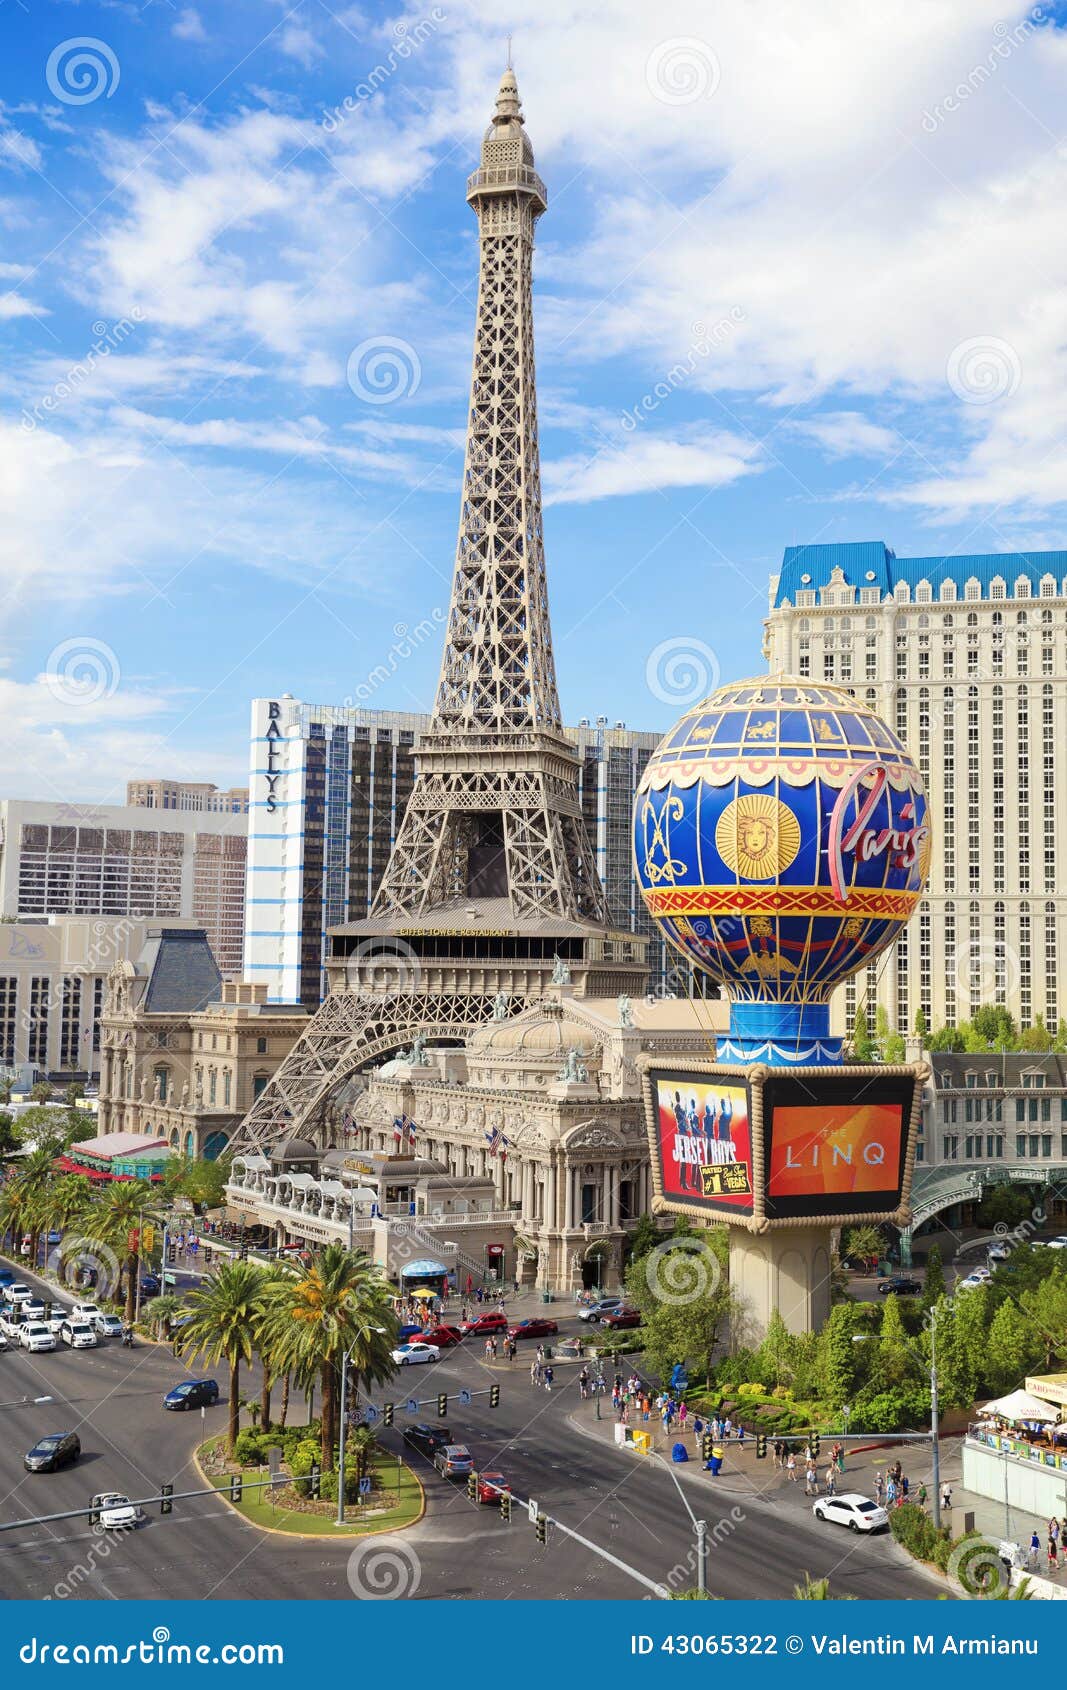 Hotel Paris, and Casino Bally's Las Vegas, The Strip, Las Vegas